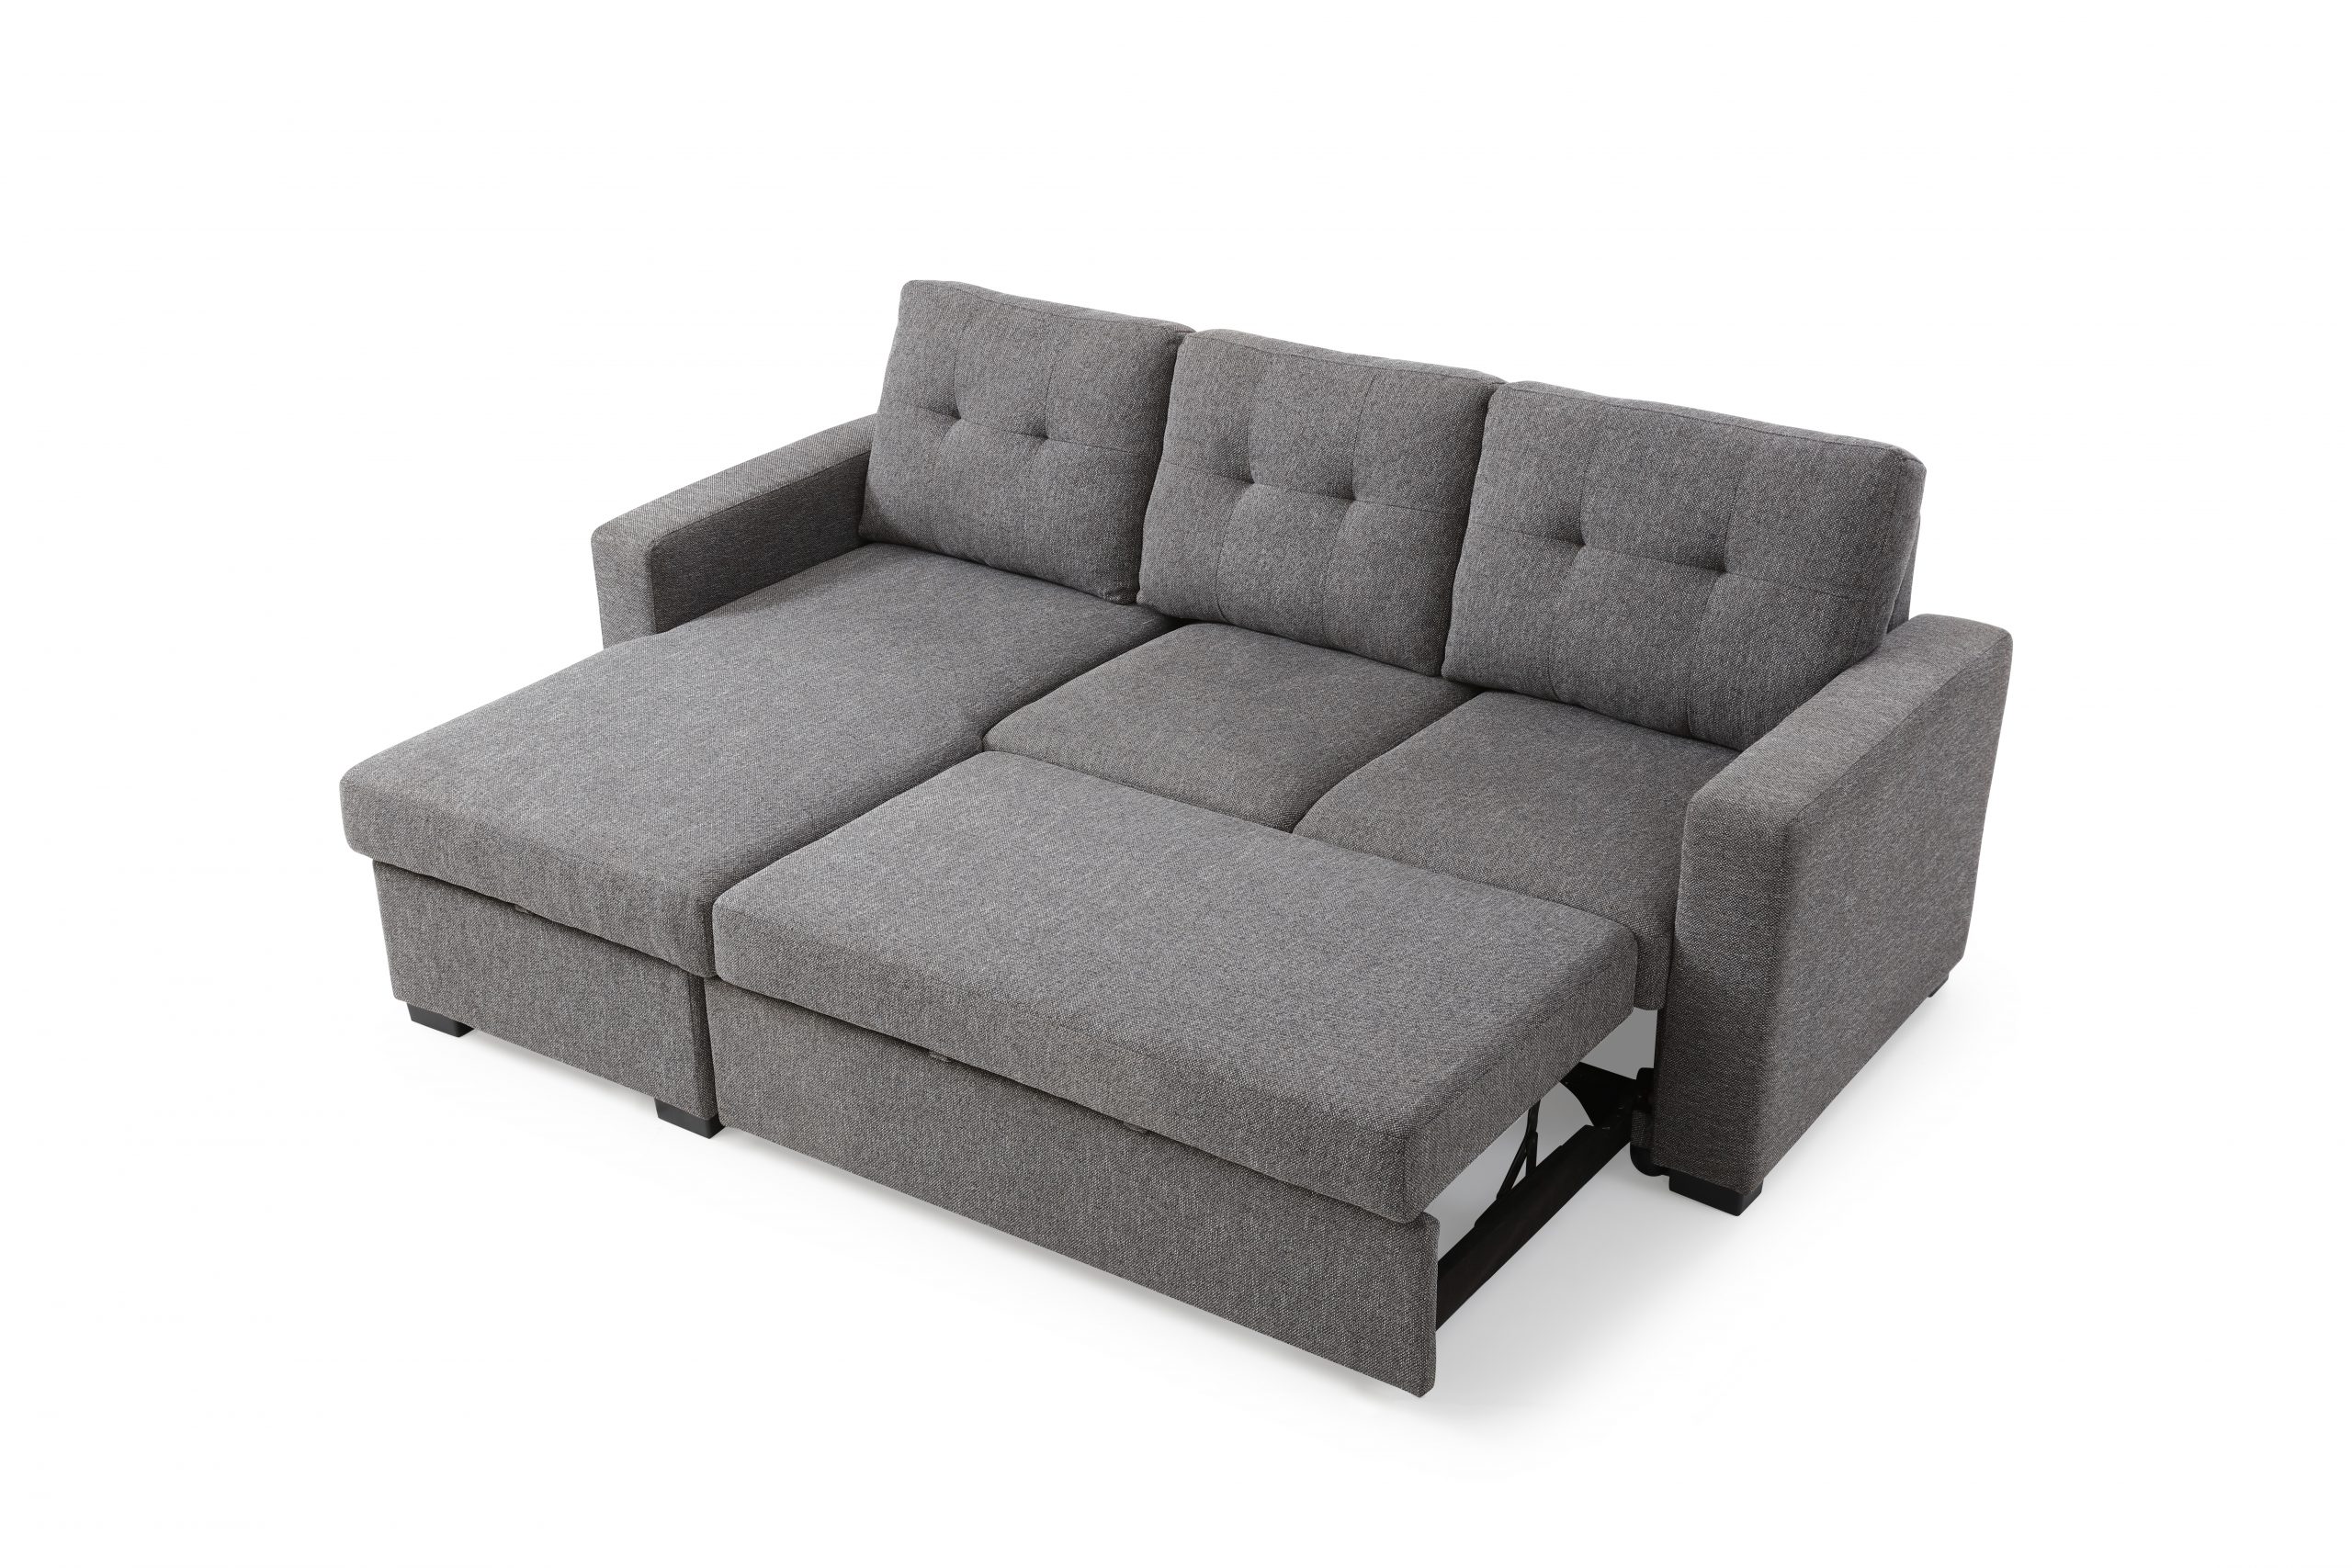 sofa bed wholesalers uk